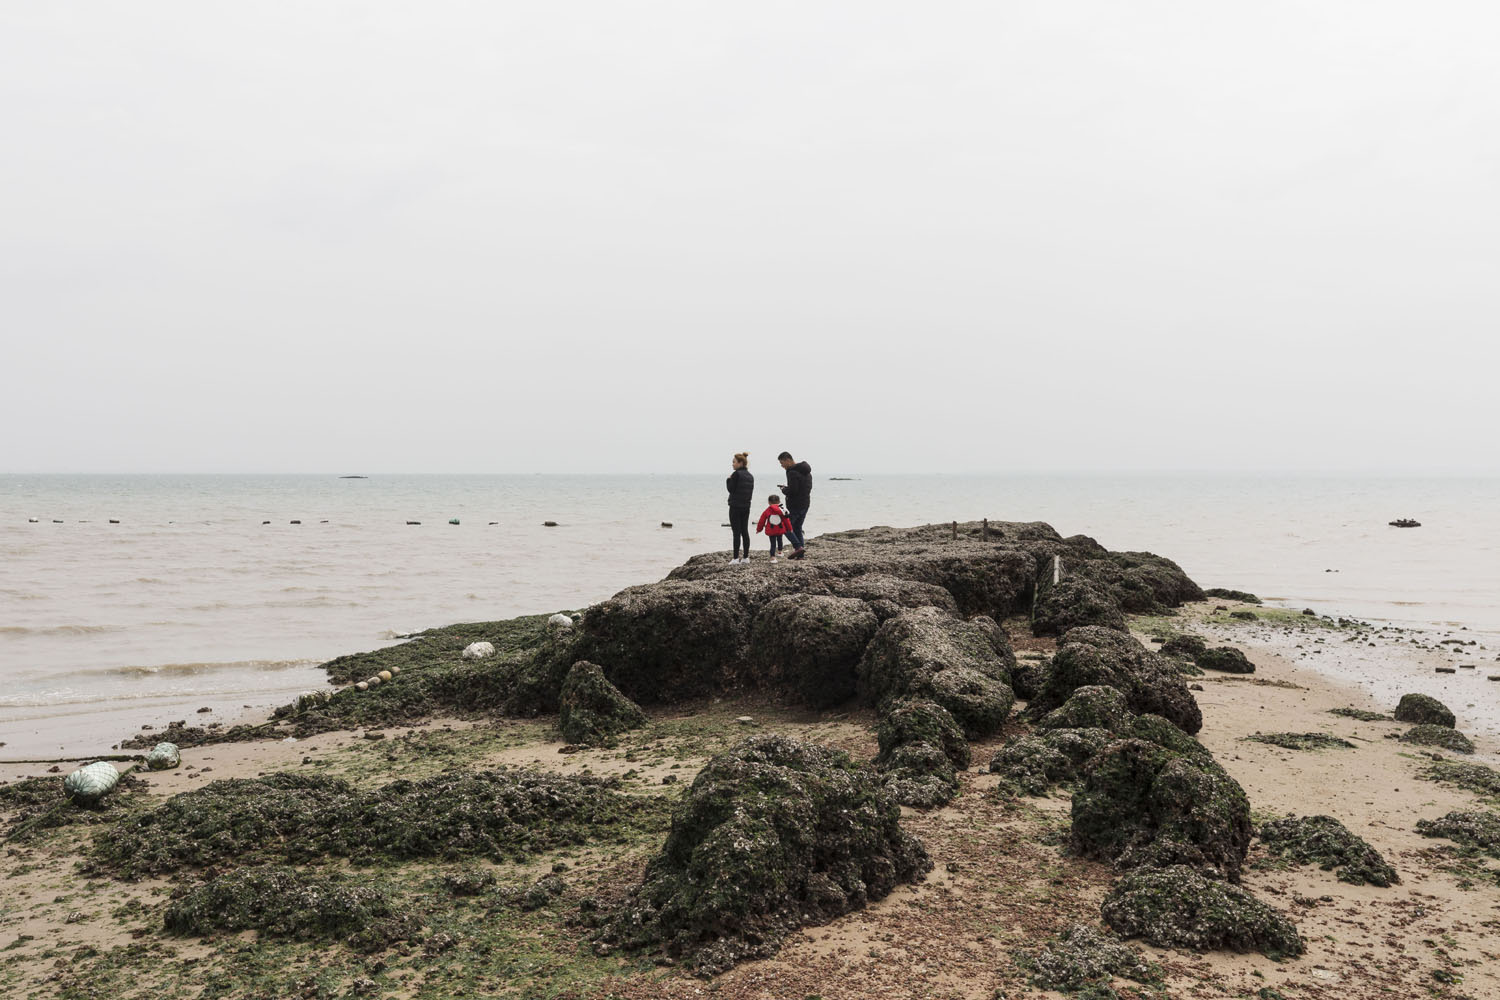 A family walk and climb among the rocky shore at Guanyinshan Fantasy Beach. Xiamen, China. 2018.